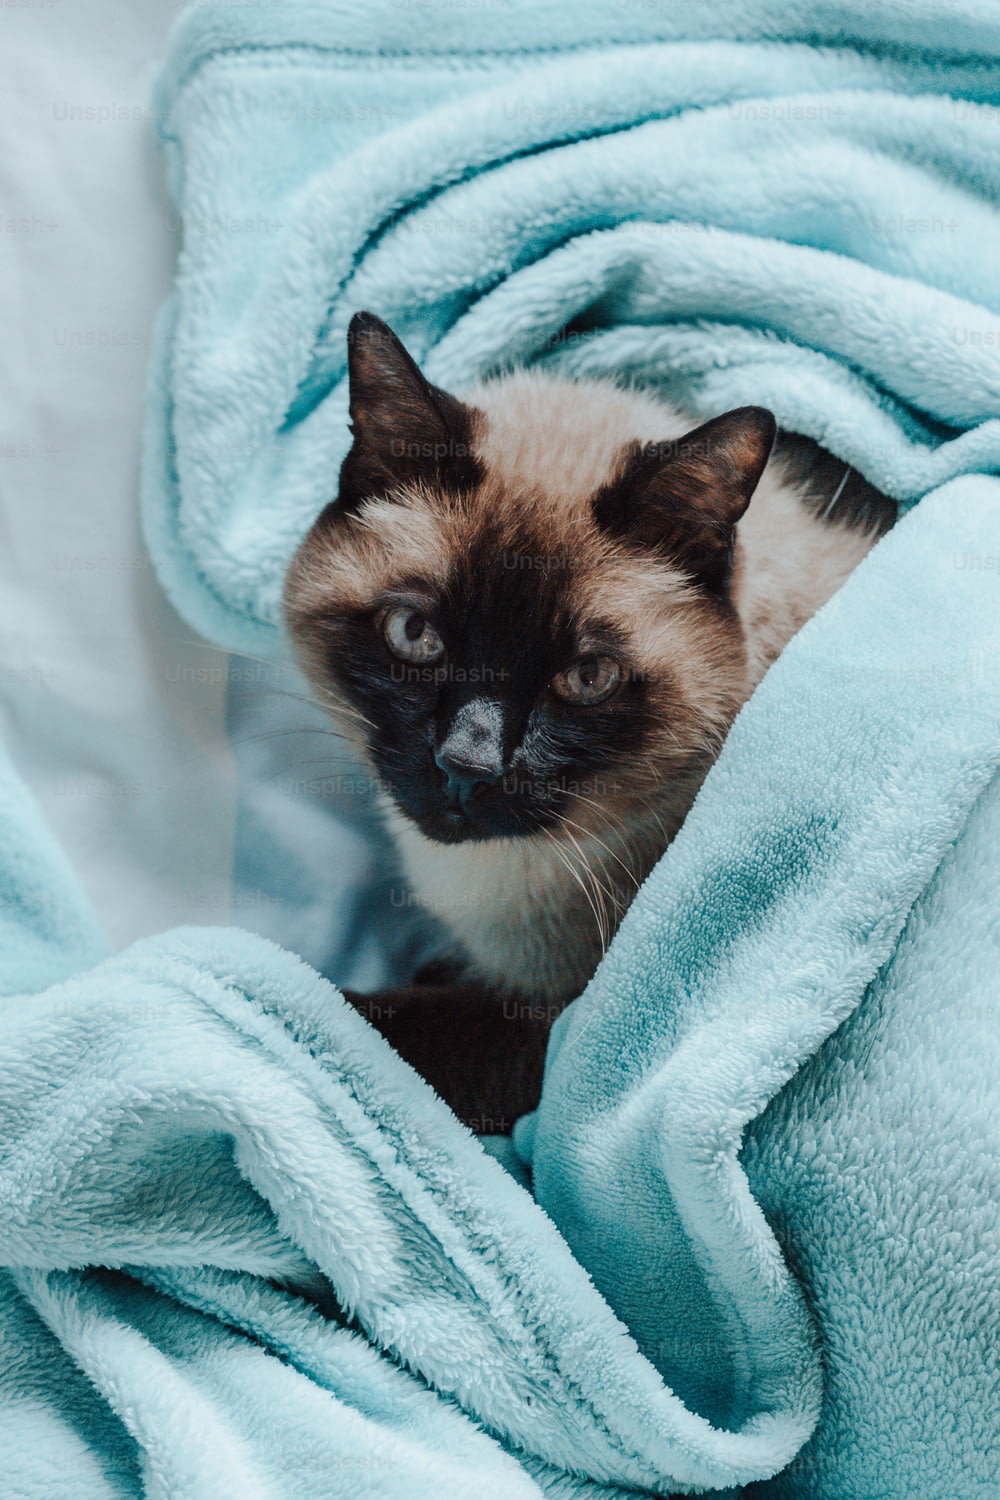 Un gatto siamese seduto sotto una coperta blu